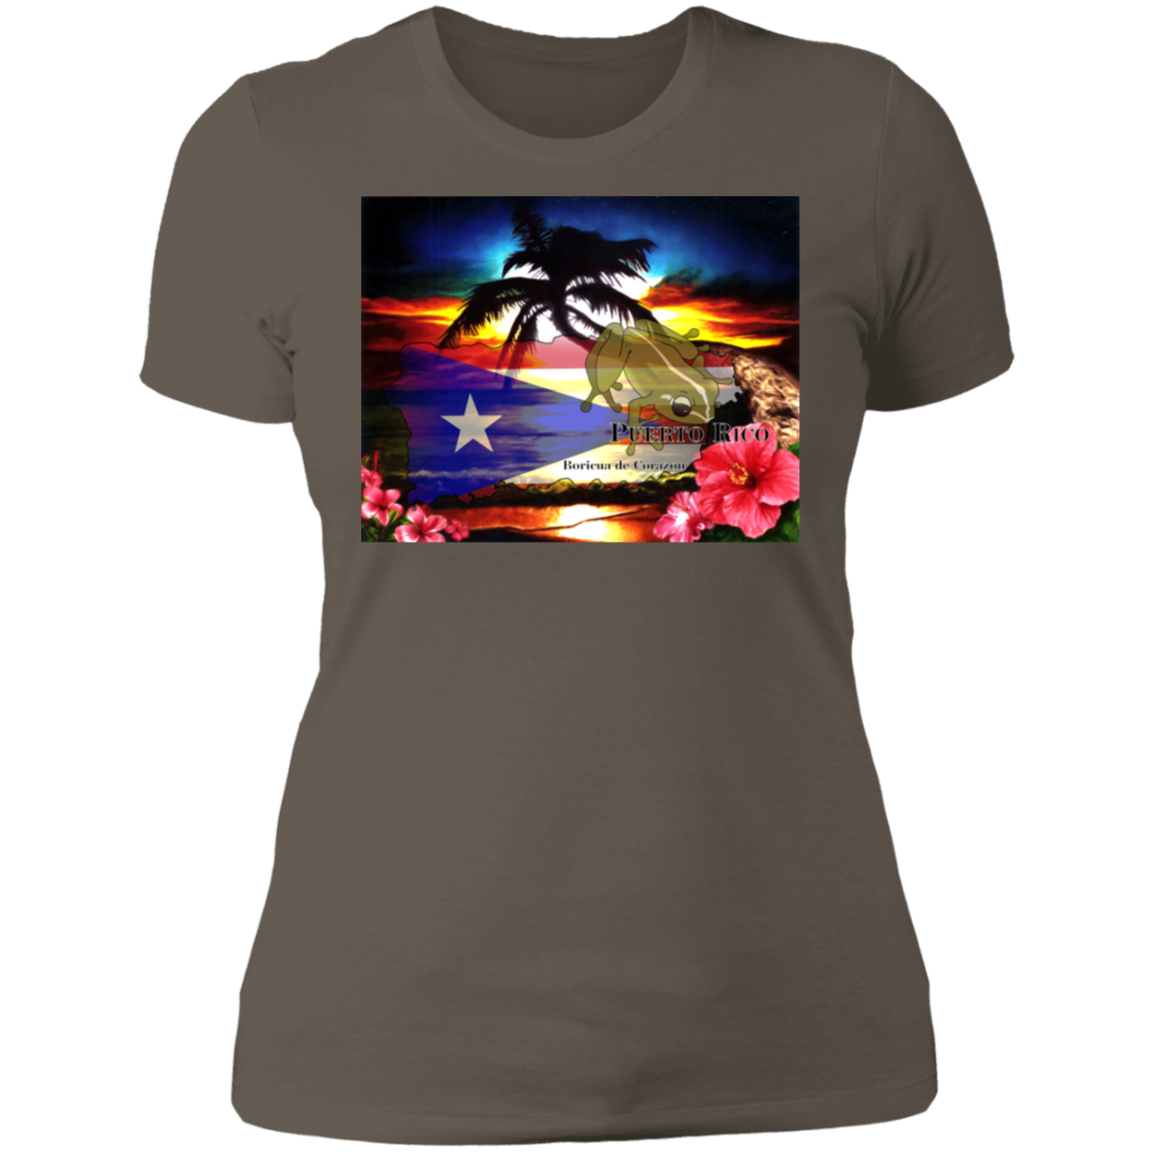 Boricuas De Corazon Ladies' Boyfriend T-Shirt - Puerto Rican Pride